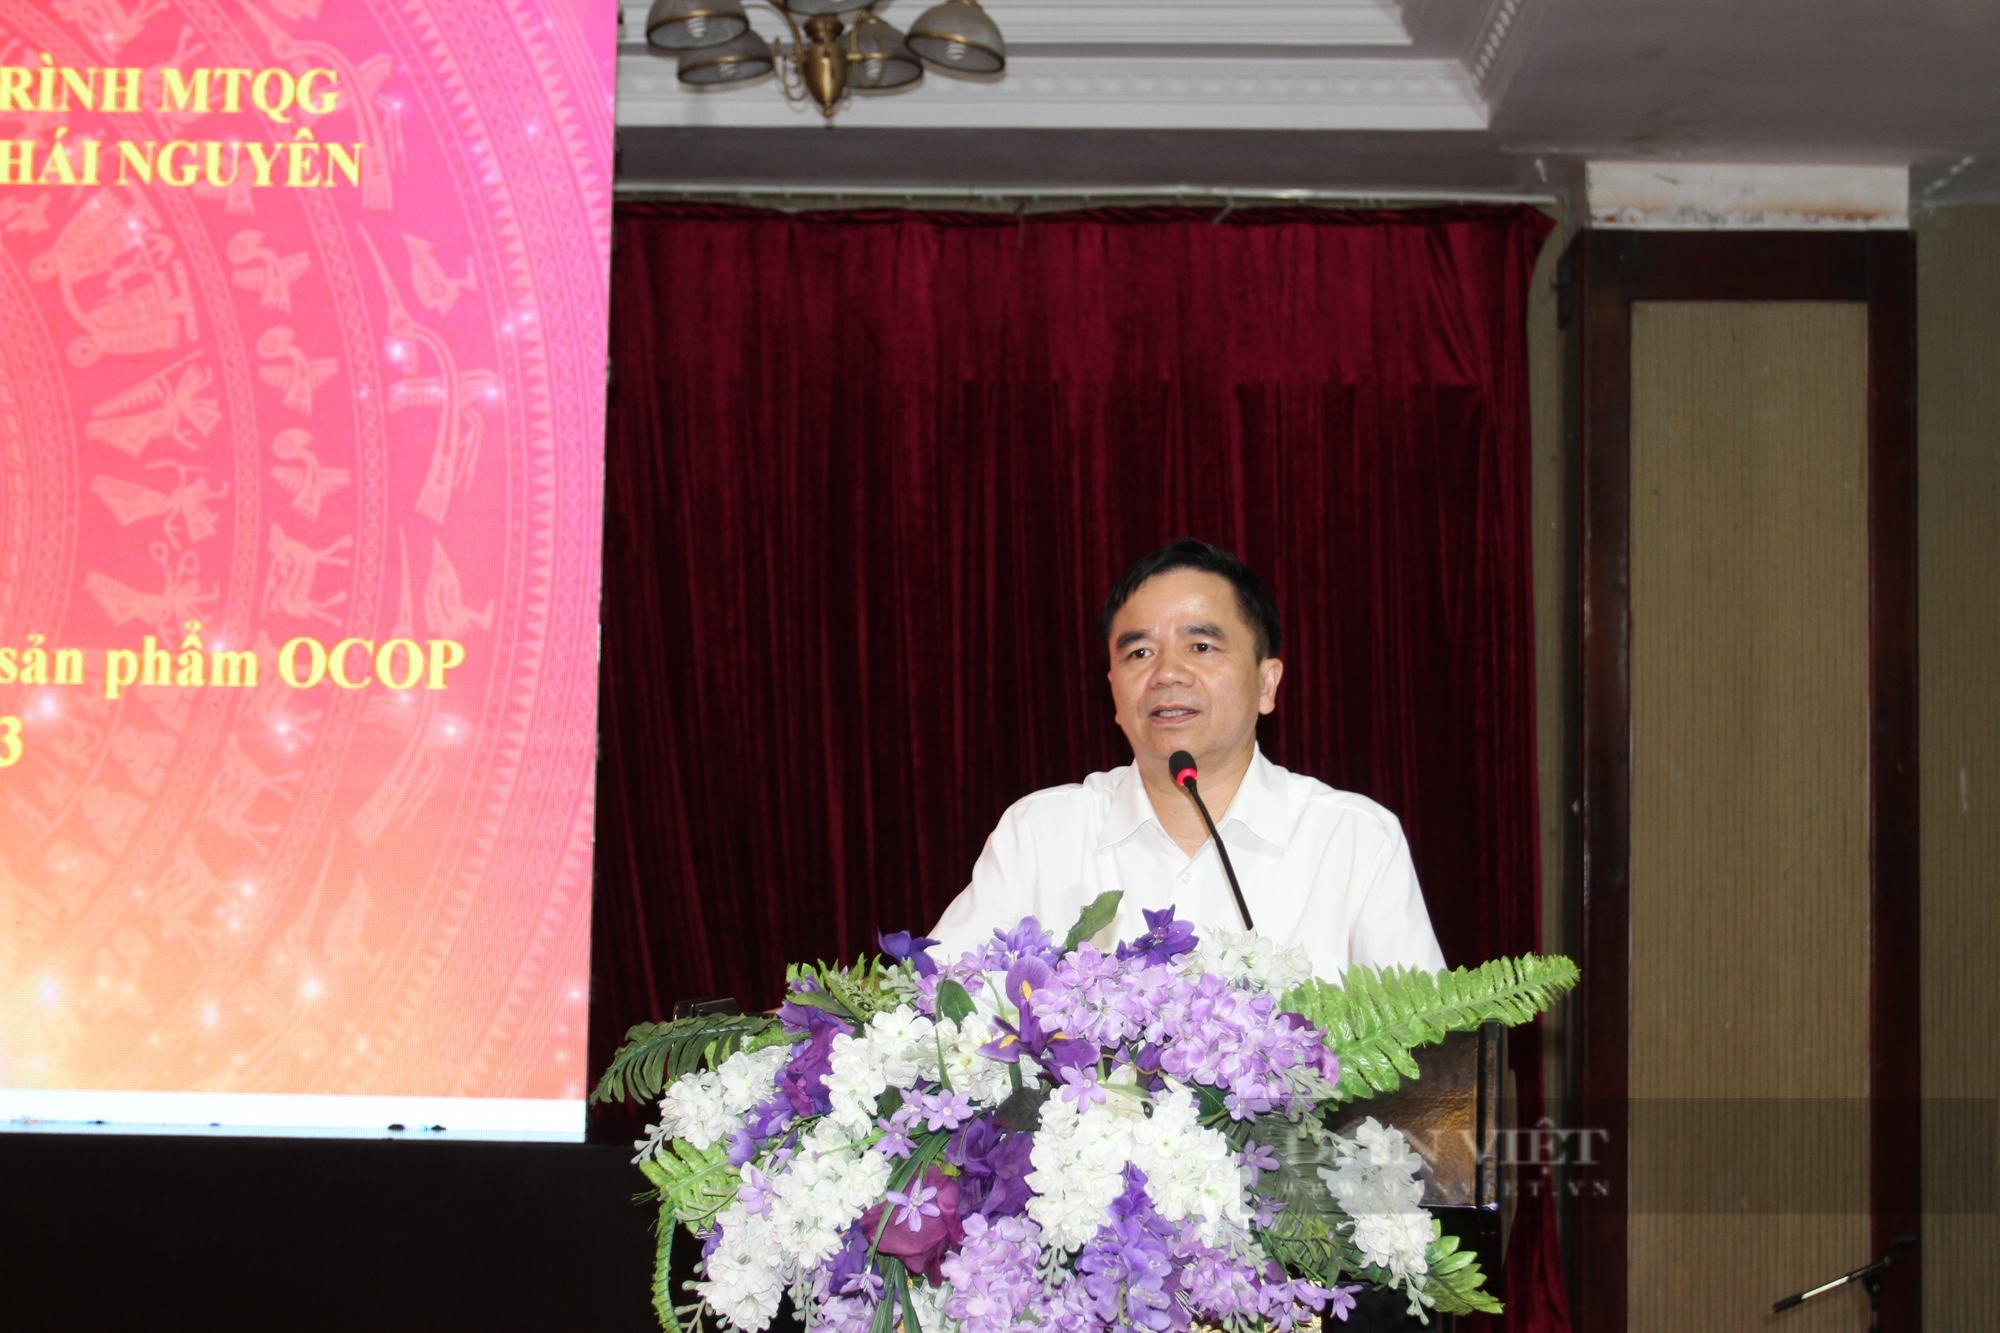 Thái Nguyên: Bàn giải pháp quảng bá, tiêu thụ cho sản phẩm OCOP tại địa phương - Ảnh 2.